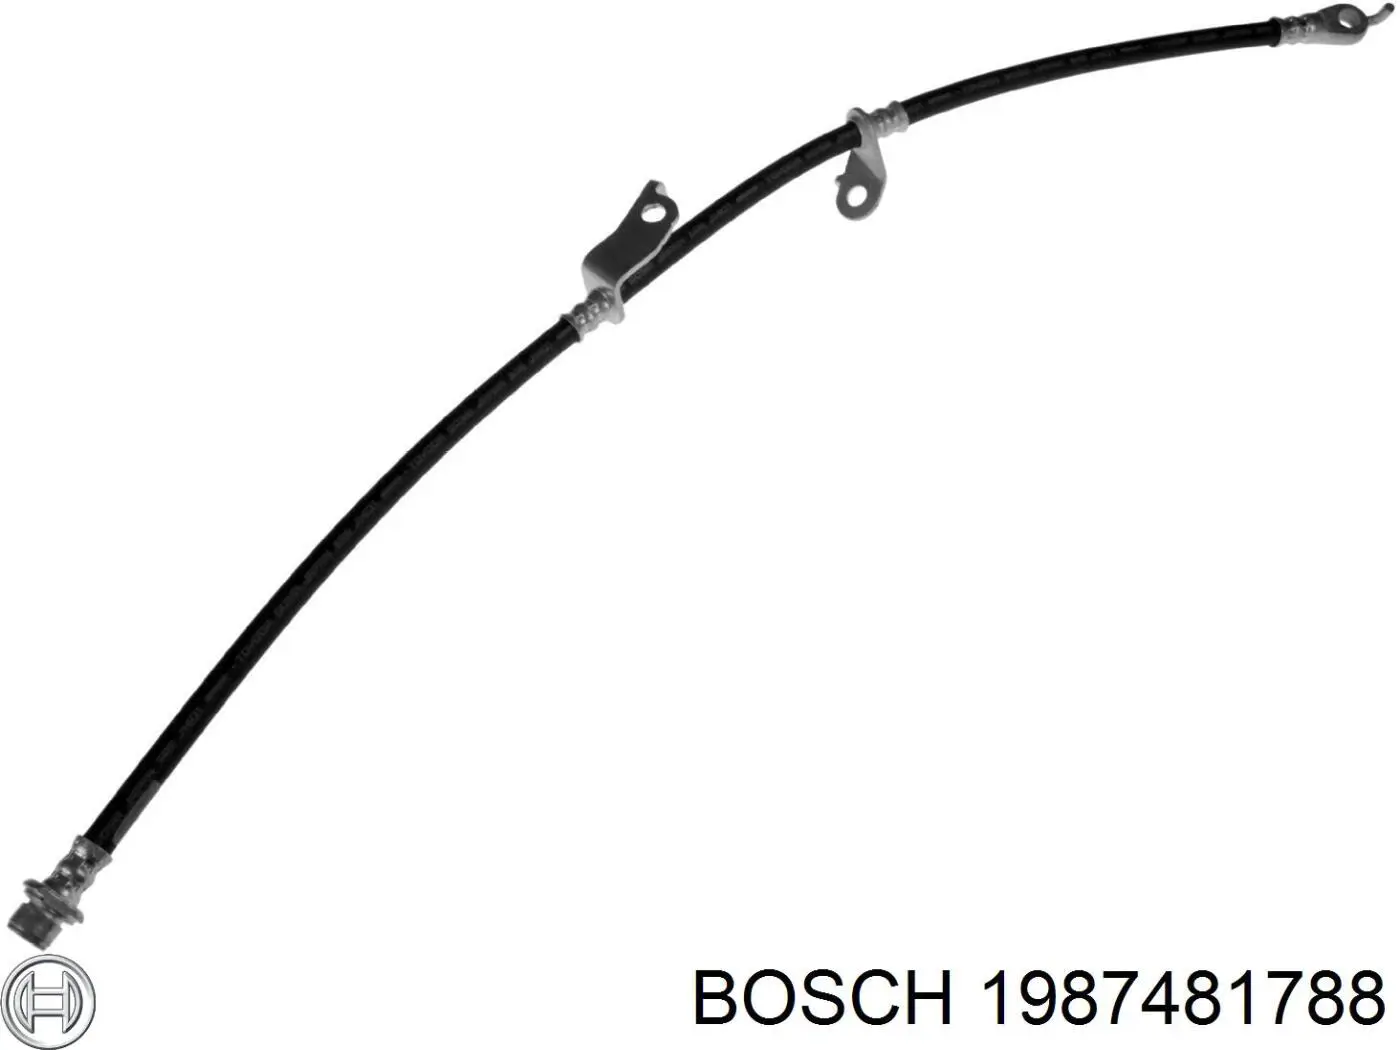 1987481788 Bosch latiguillos de freno delantero derecho